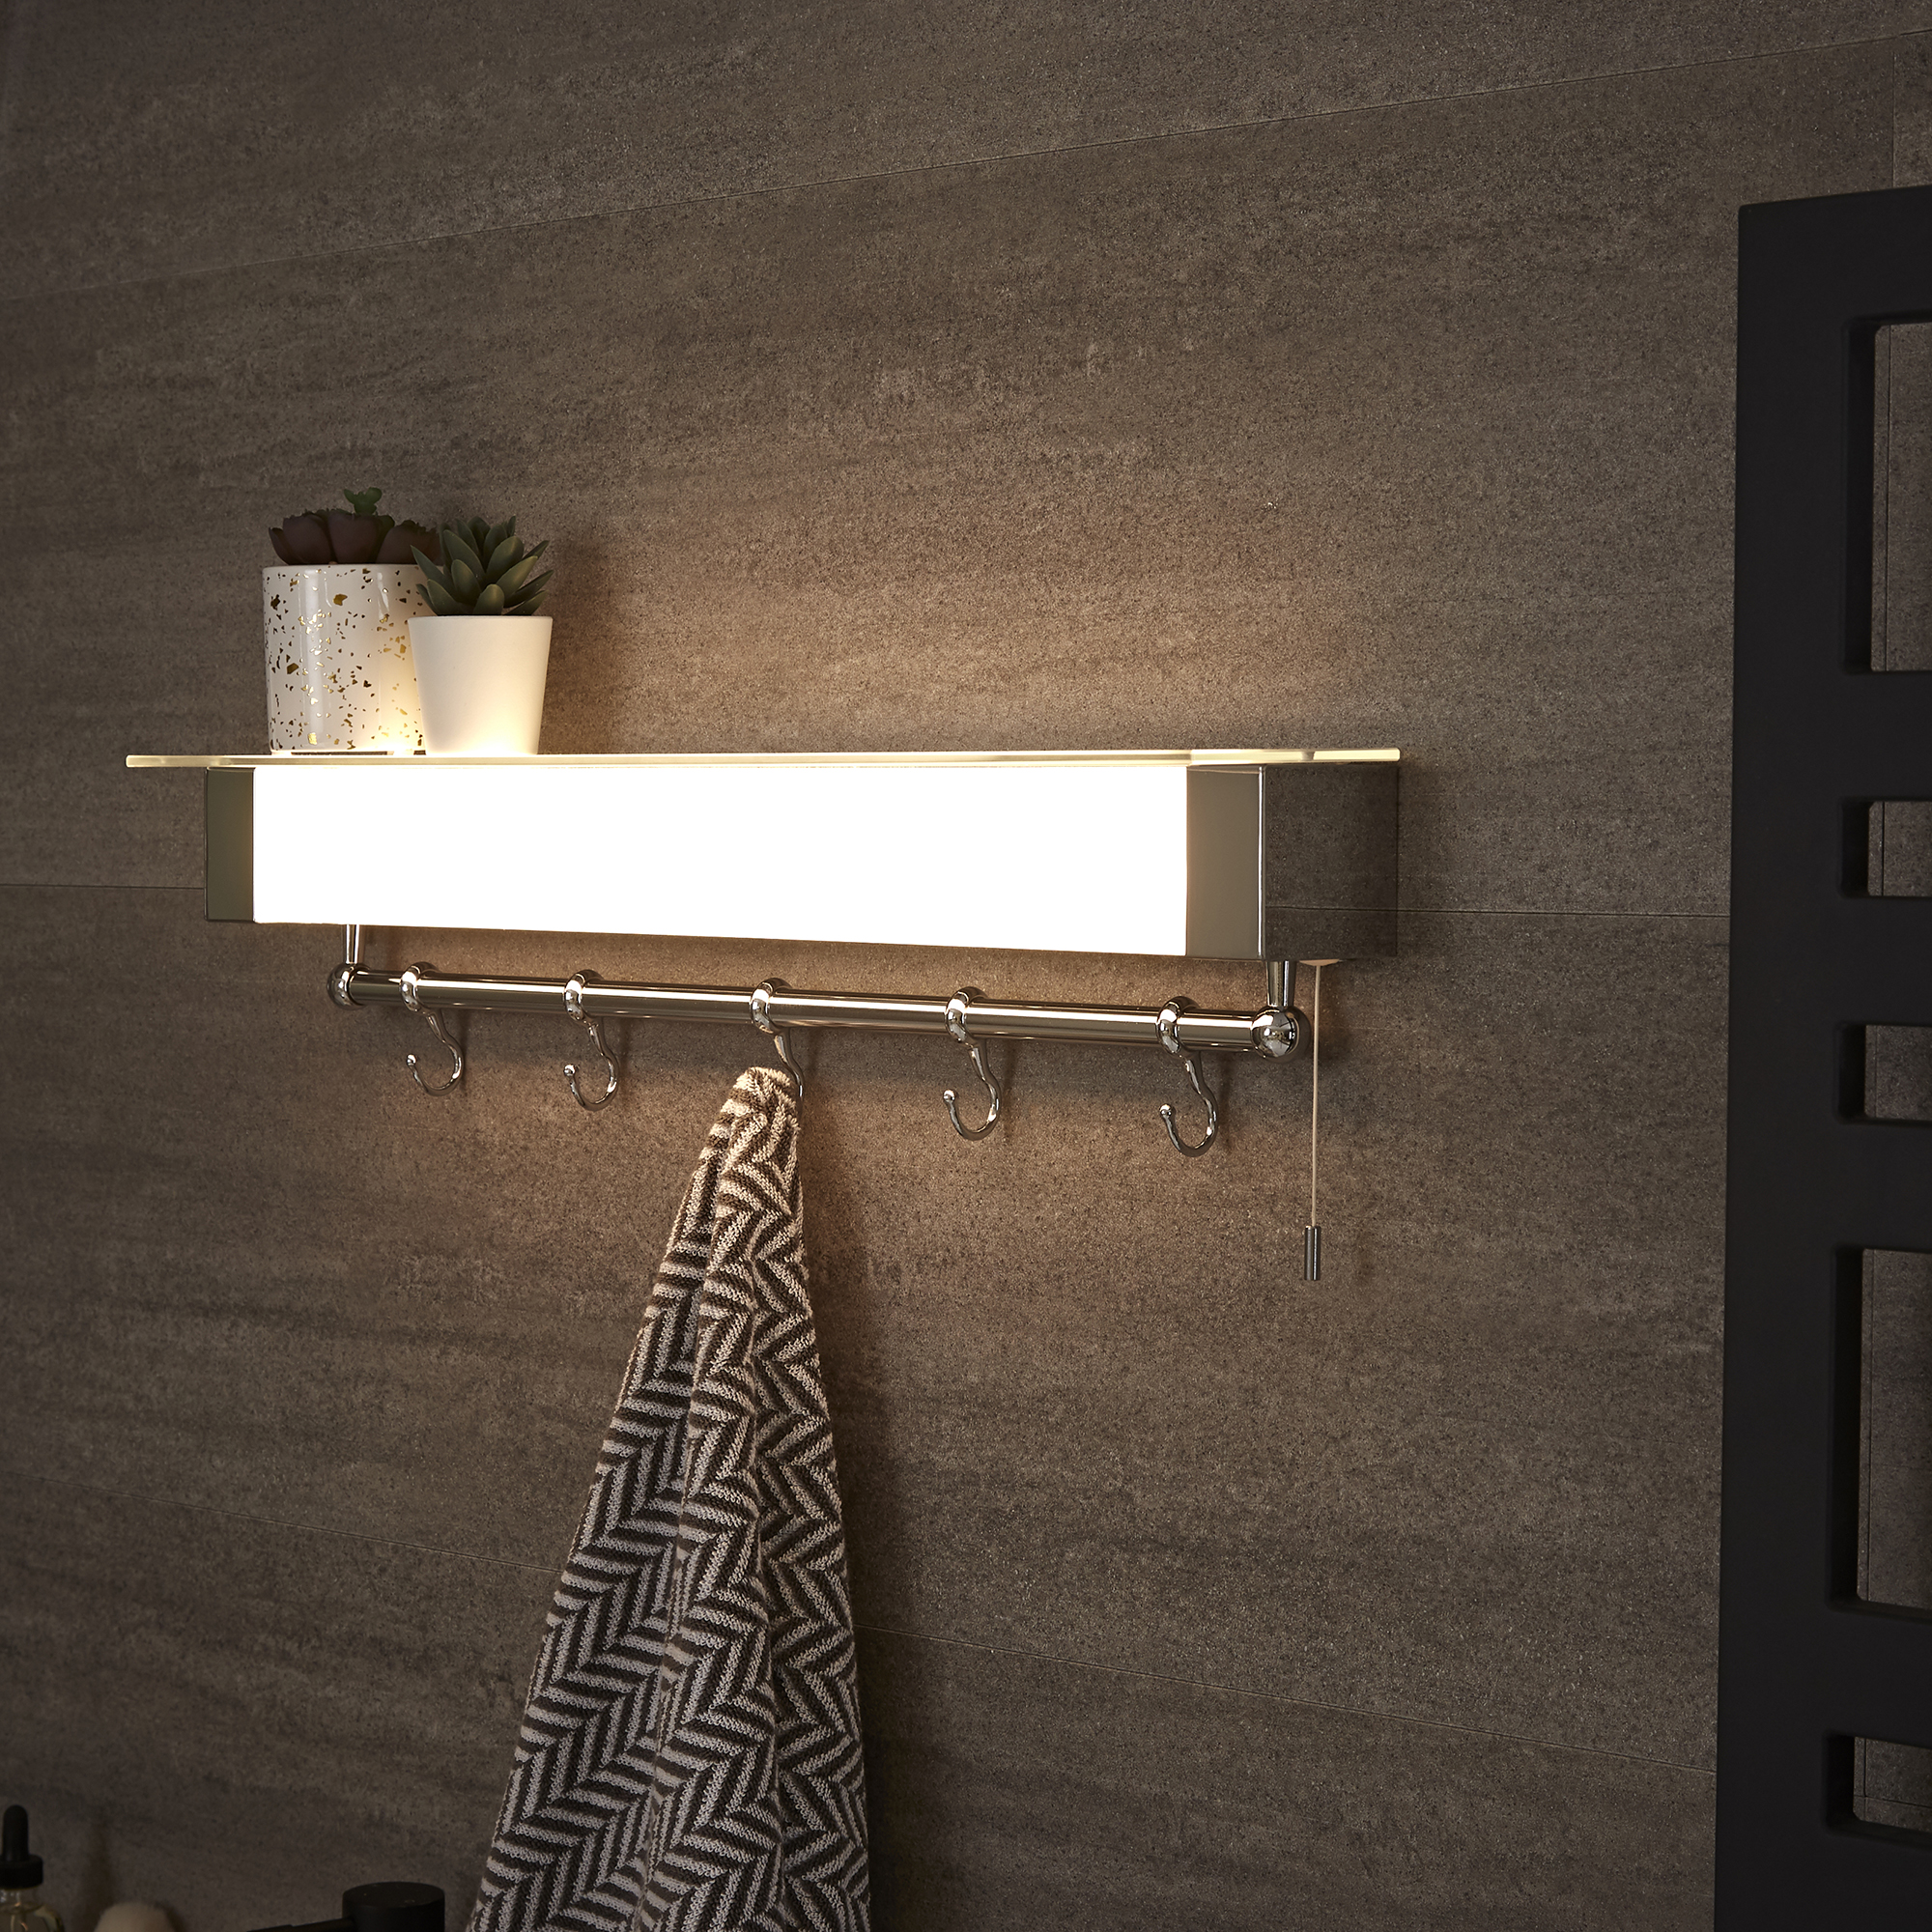 iluminacion ducha: toallero iluminado en la pared del baño con azulejos oscuros